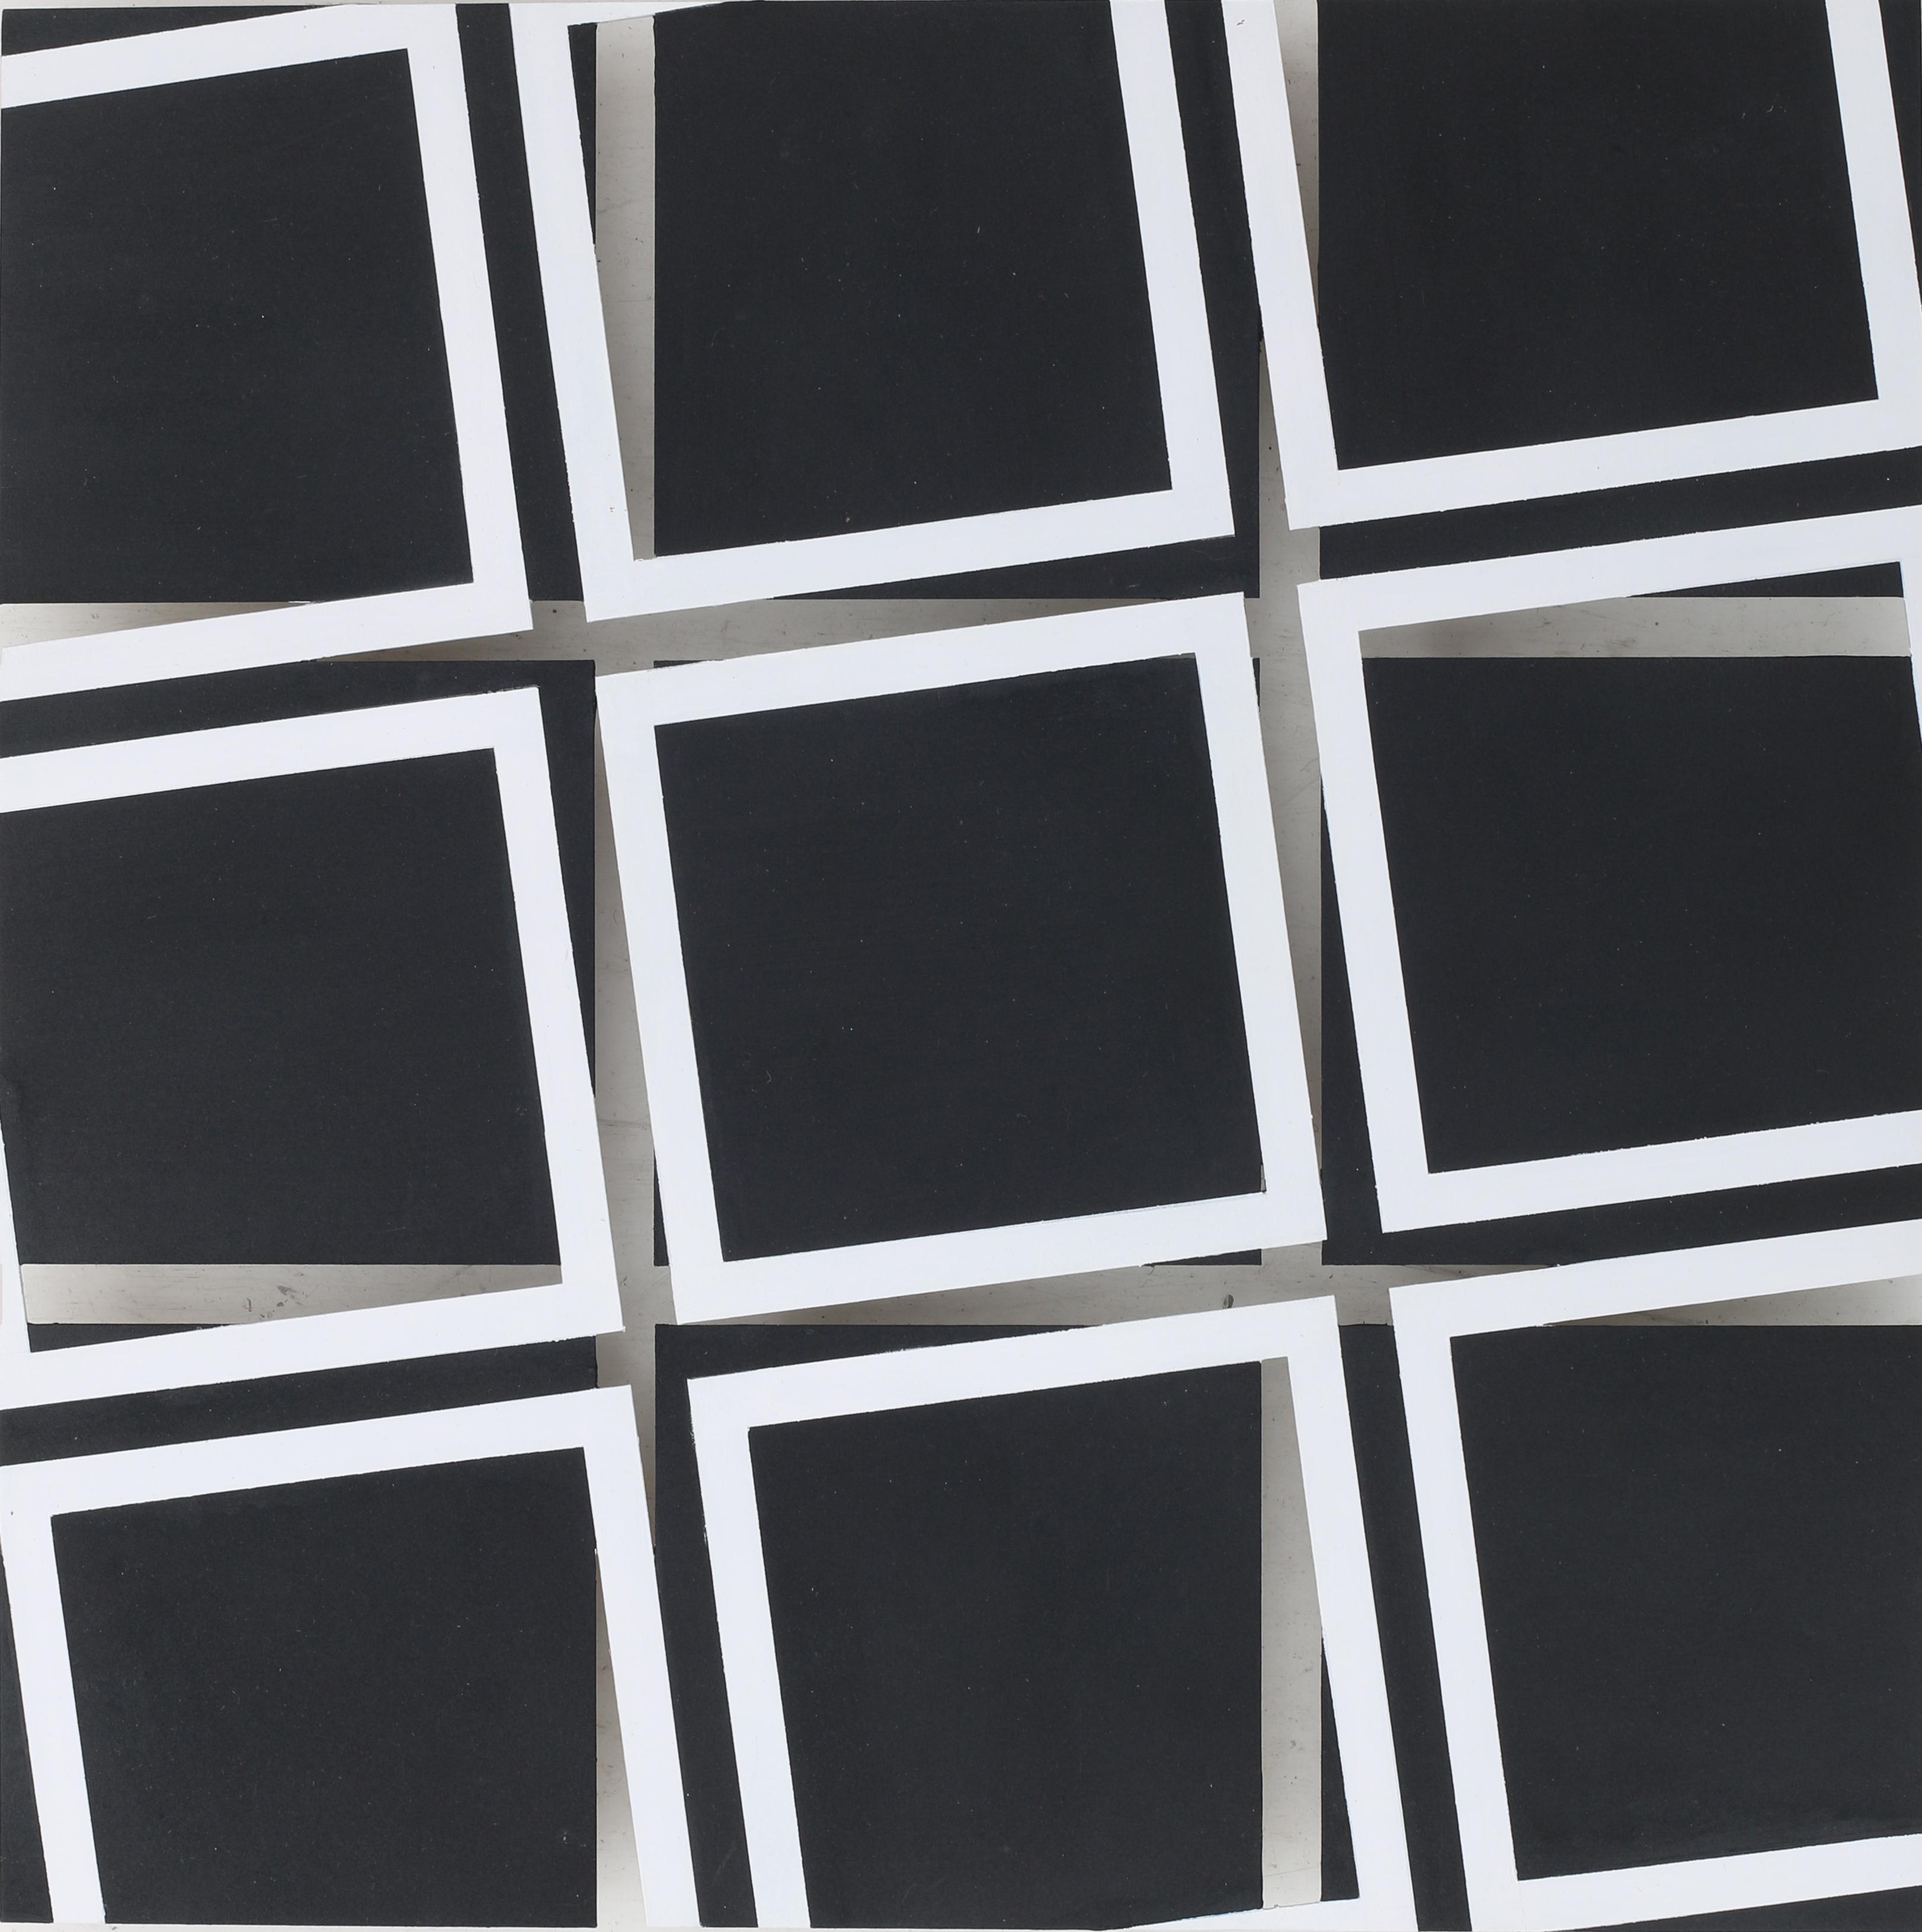 White frames on black squares (2012)